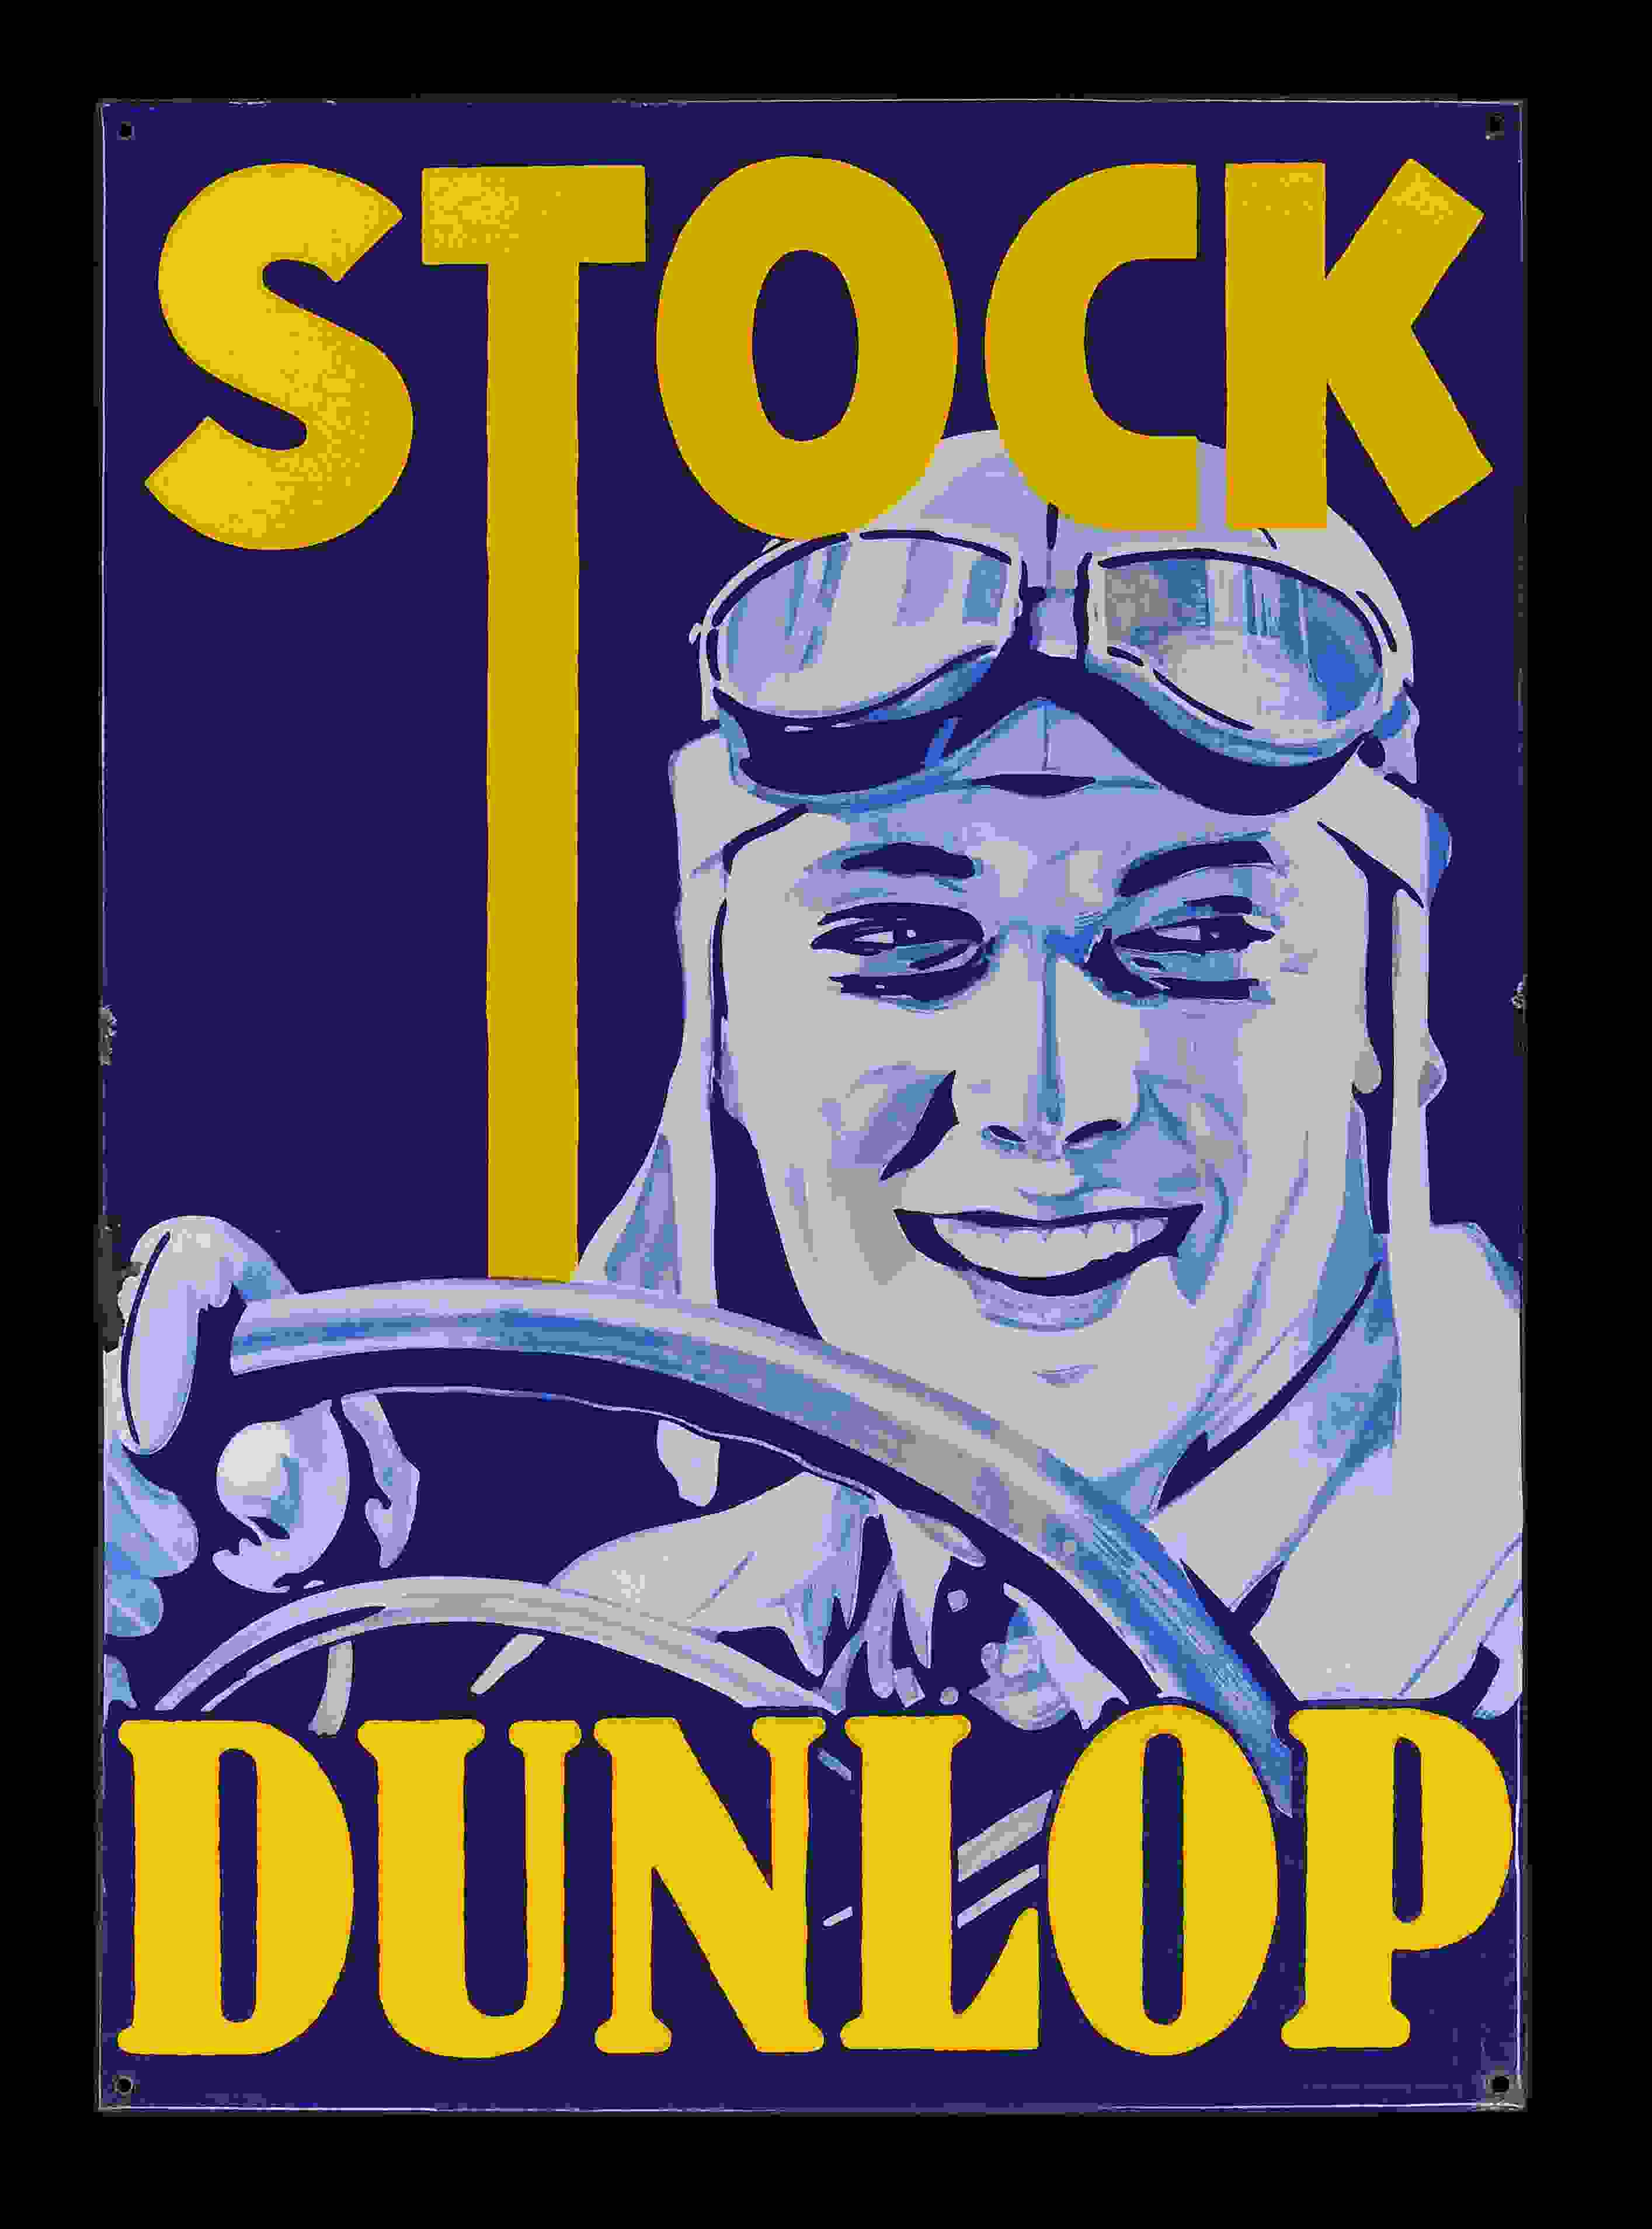 Stock Dunlop 